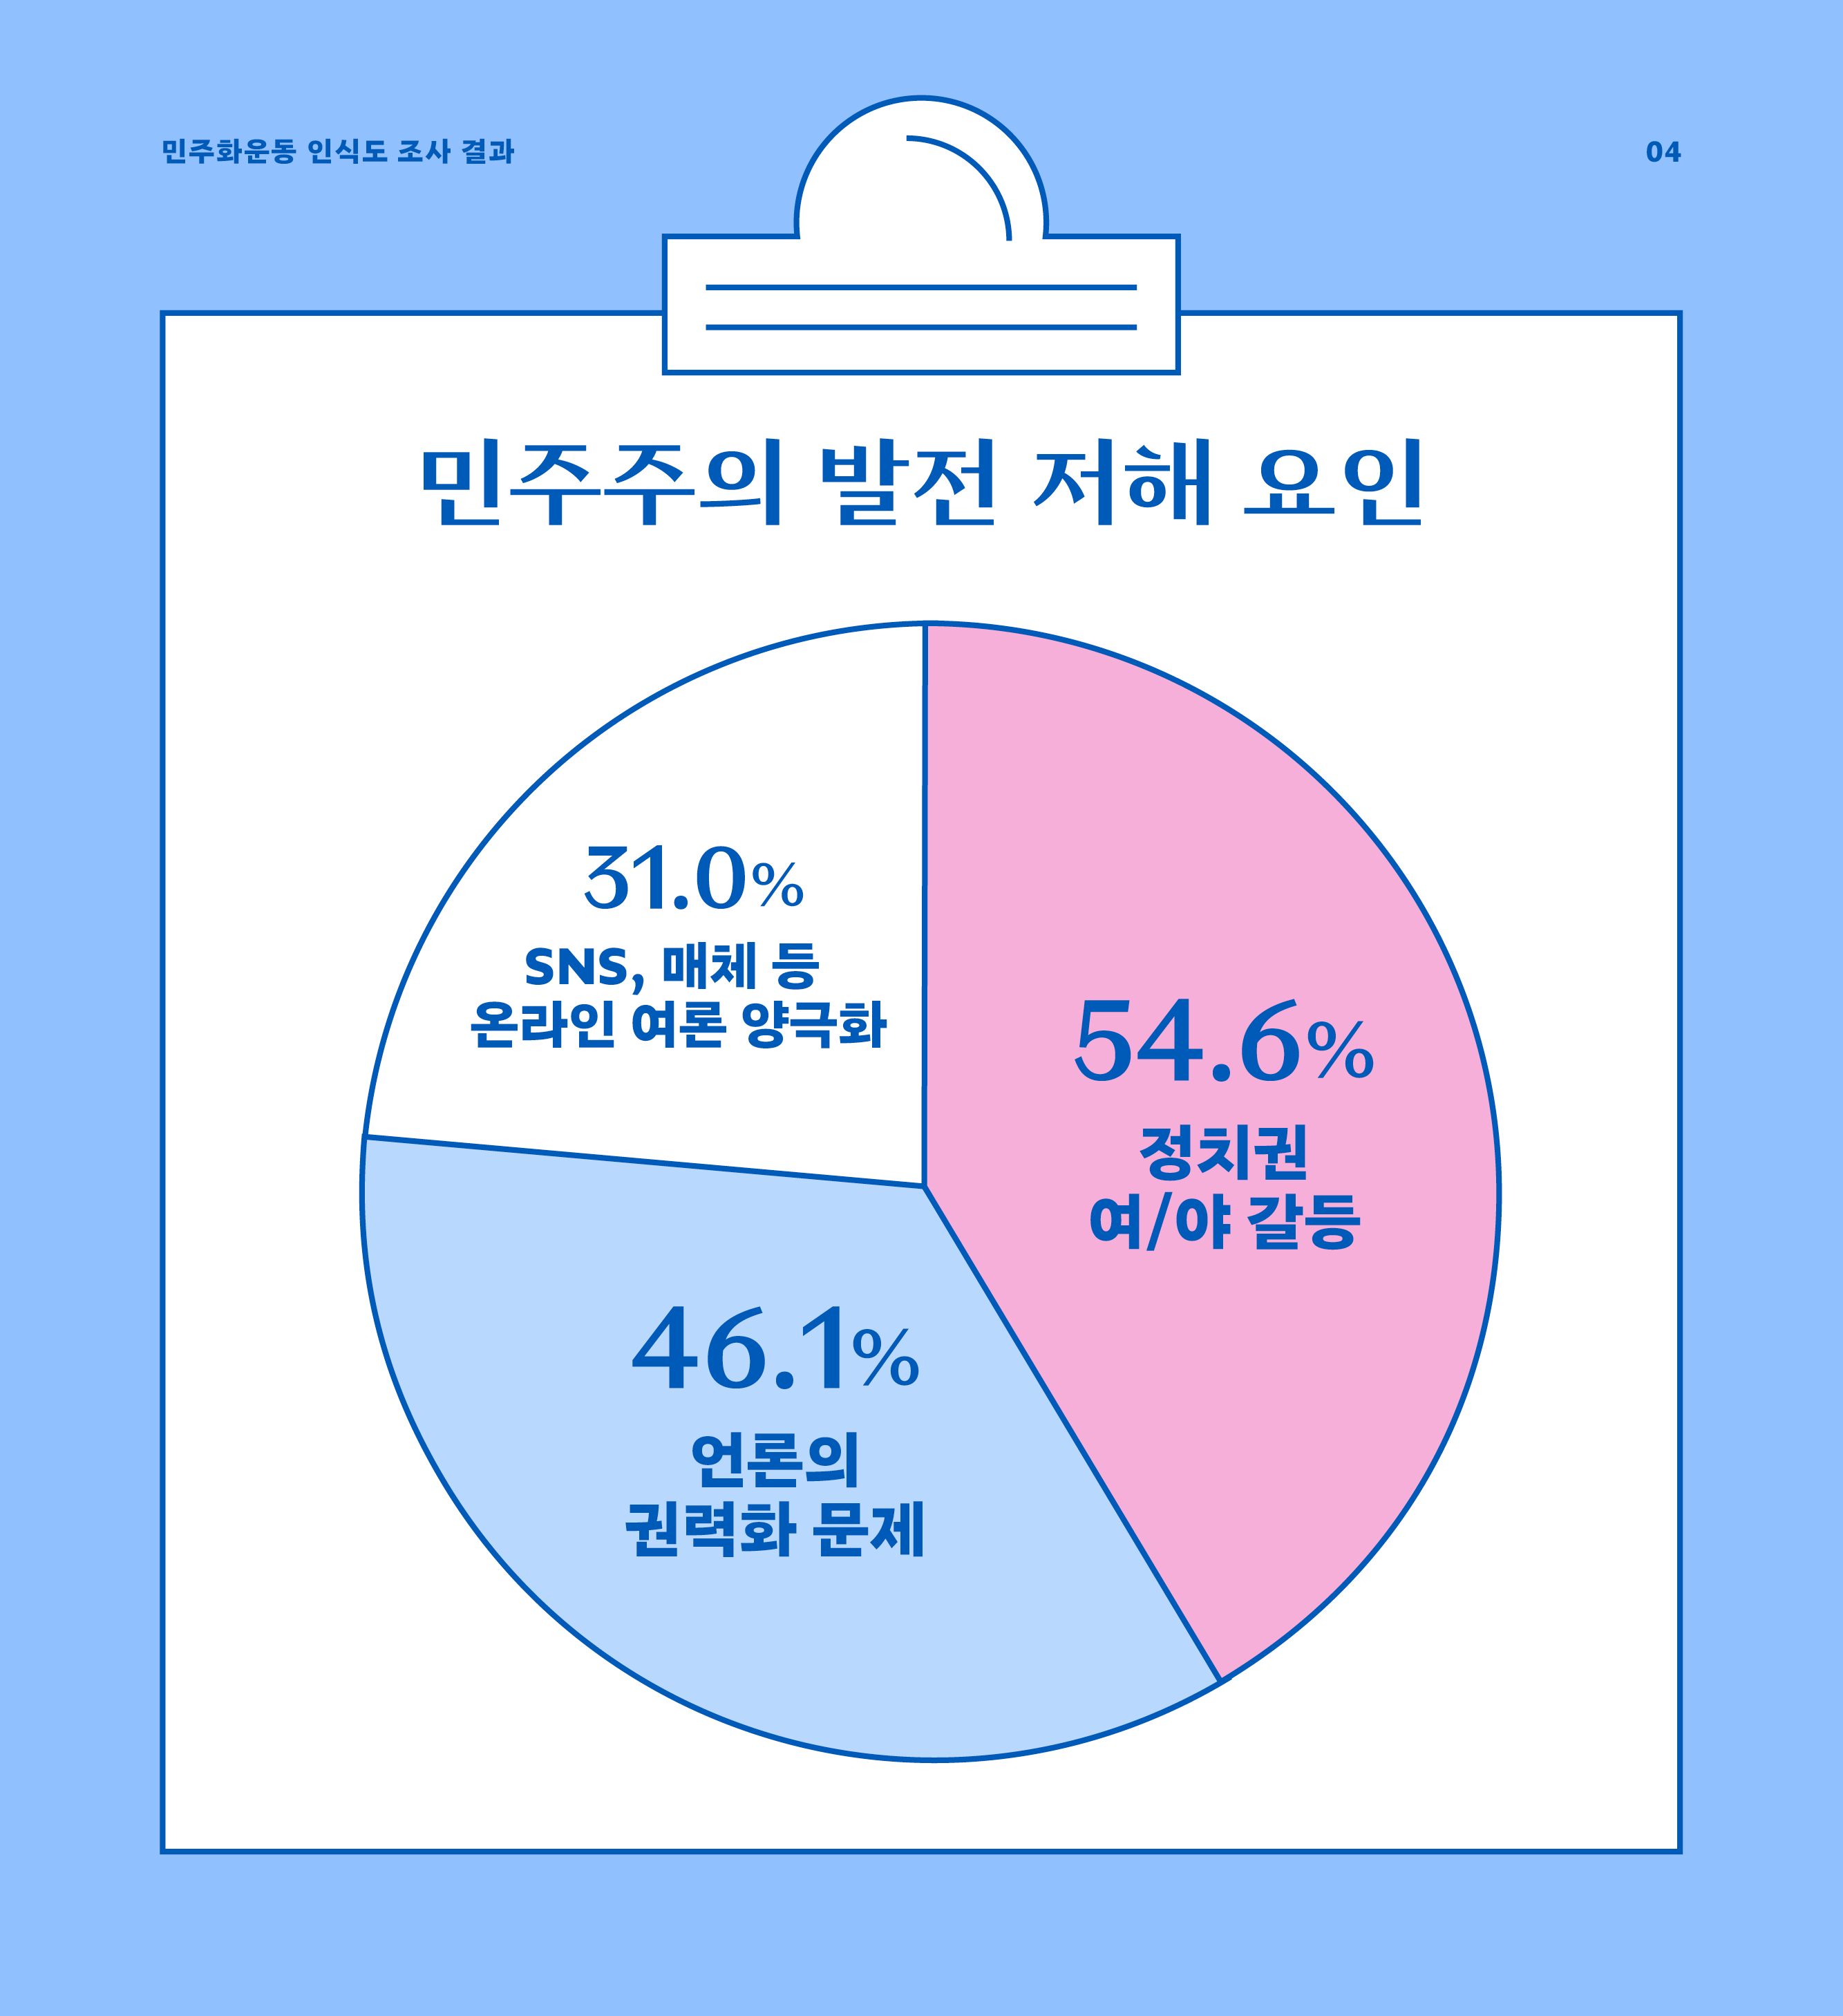 민주주의 발전 저해요인: 정치권 여/야갈등 (54.6%), 언론의 권력화 문제 (46.1%)